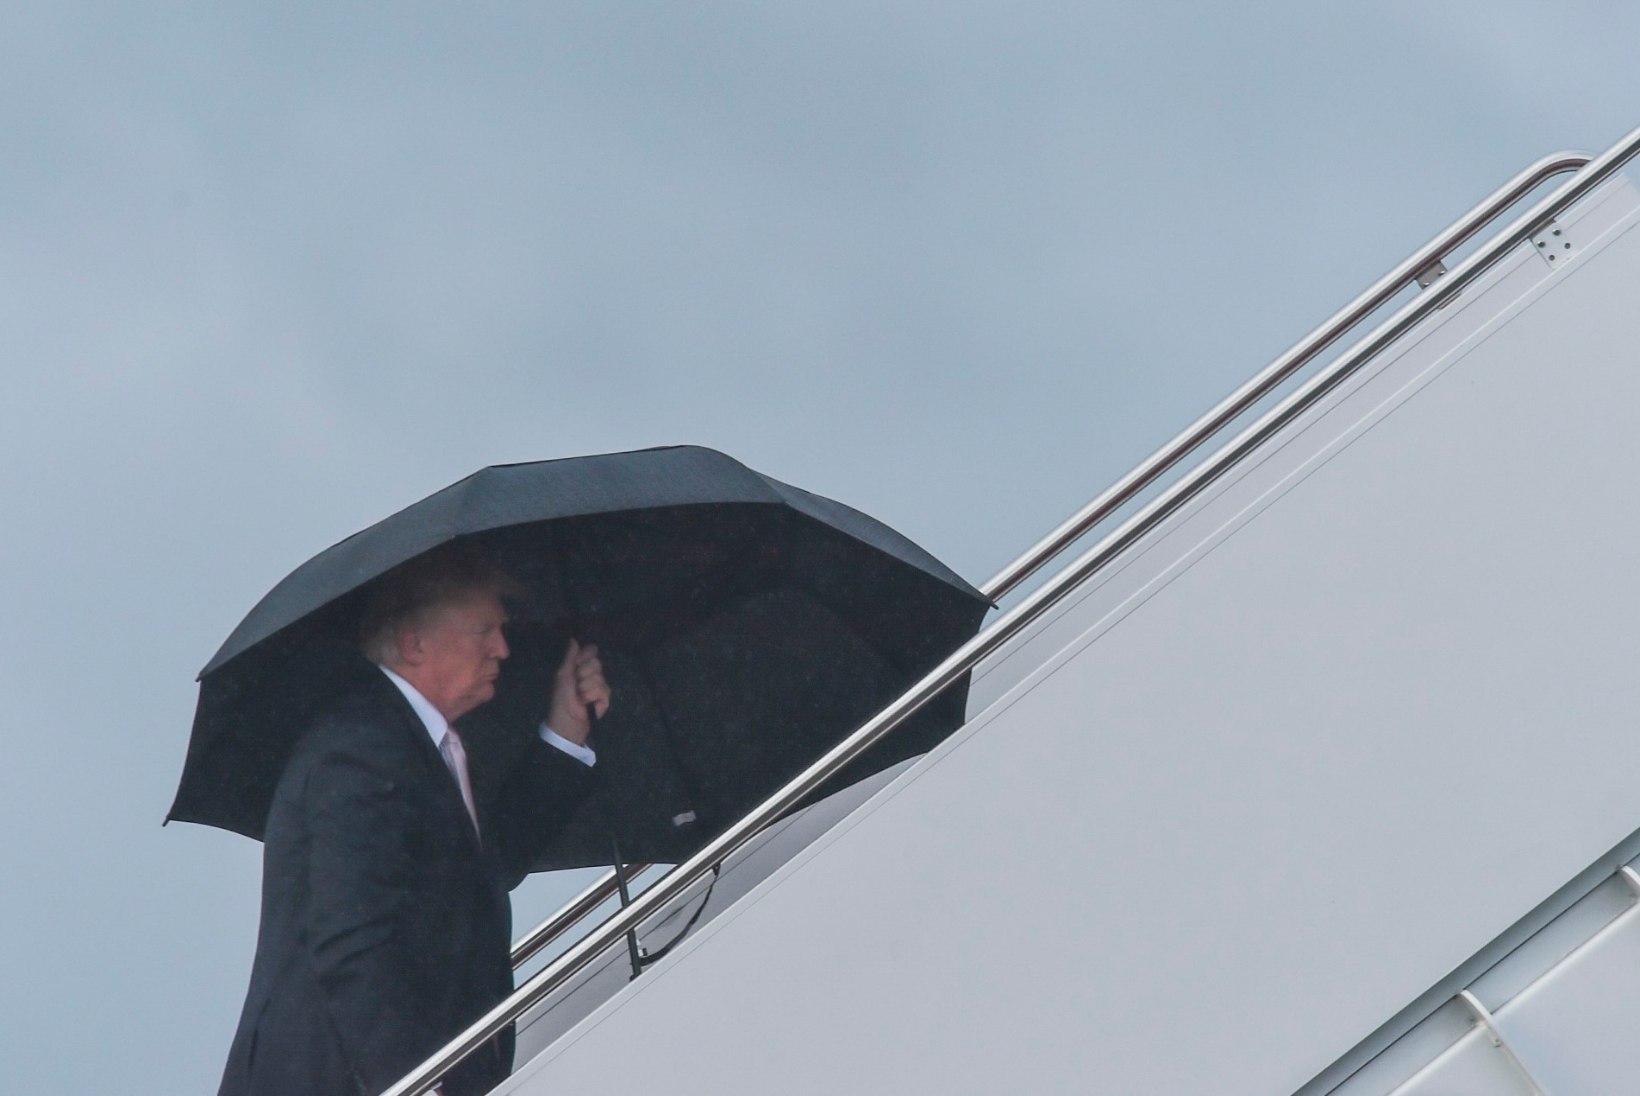 FOTOD | Trump hoiab enda kohal suurt vihmavarju, jättes naise ja poja saju kätte 